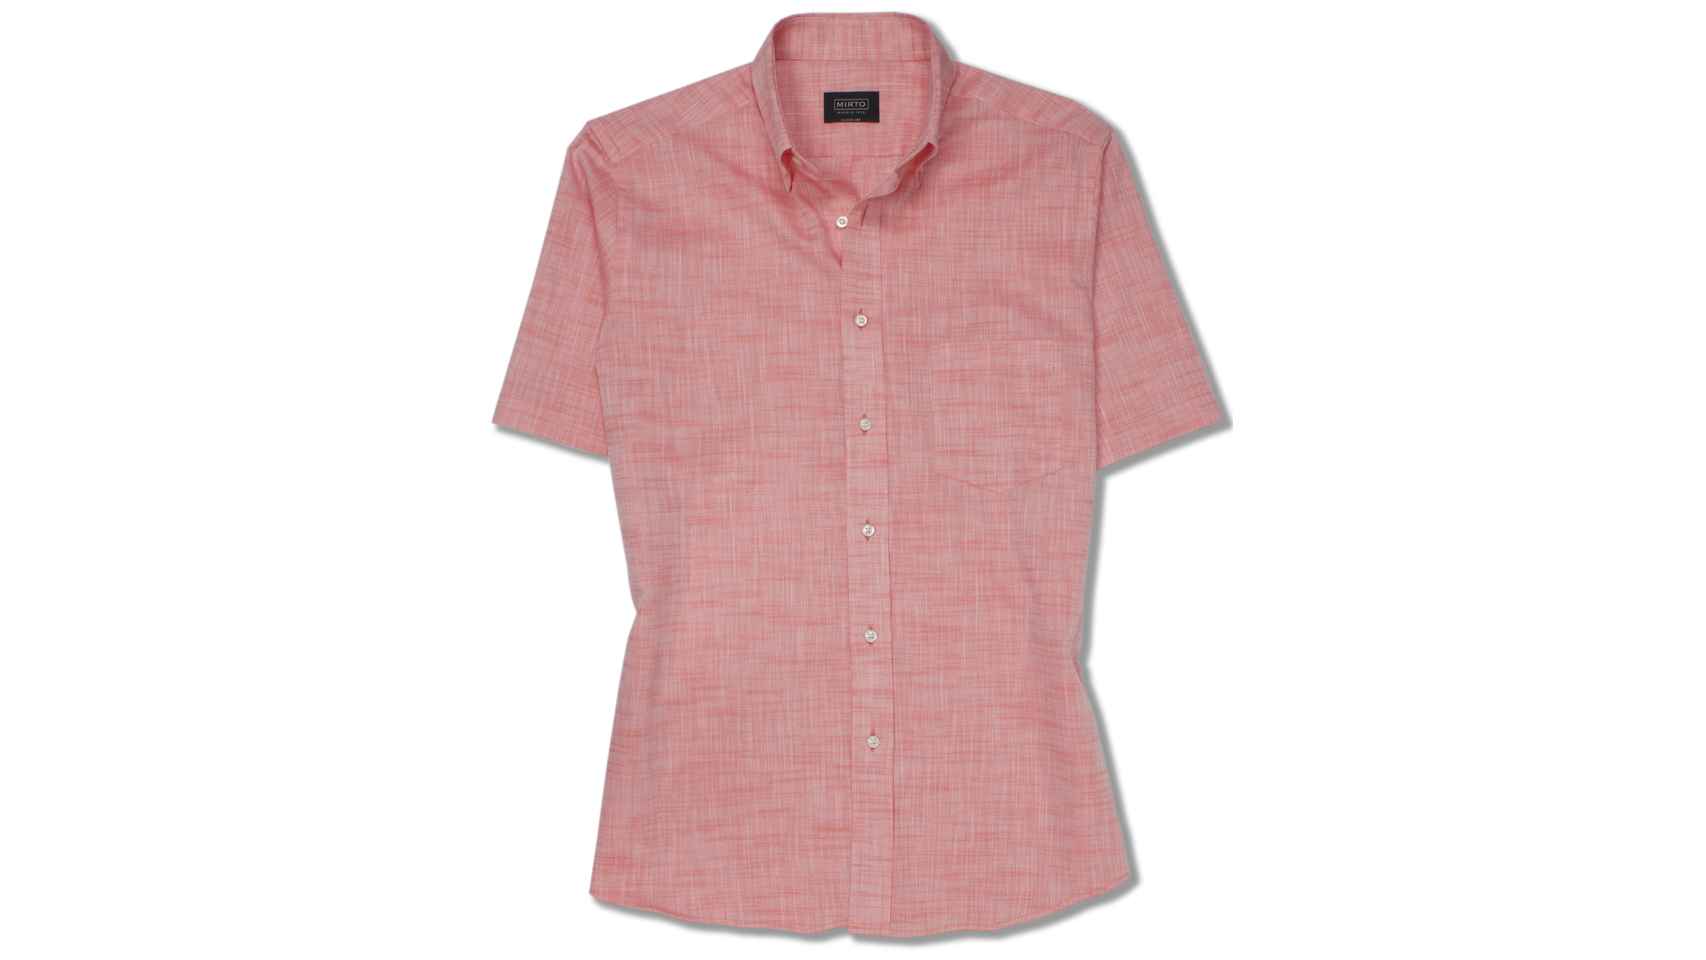 Camisa de la firma MIRTO, de manga corta, en lino tono salmón.